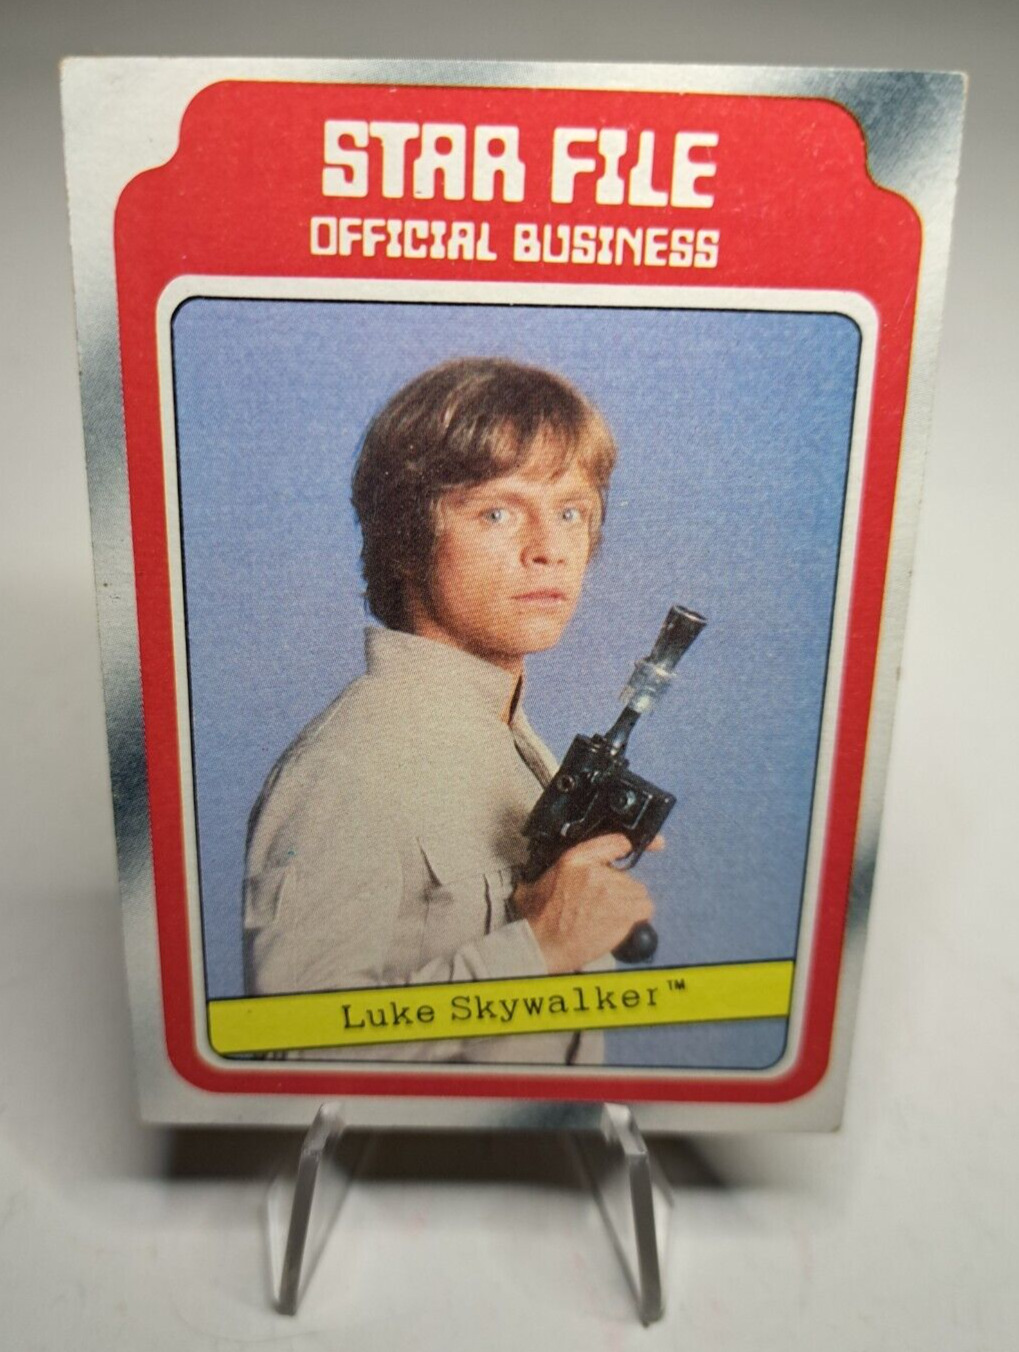 Star Wars Luke Skywalker Star File 1980 Topps #2 Empire Strikes Back Mark Hamill